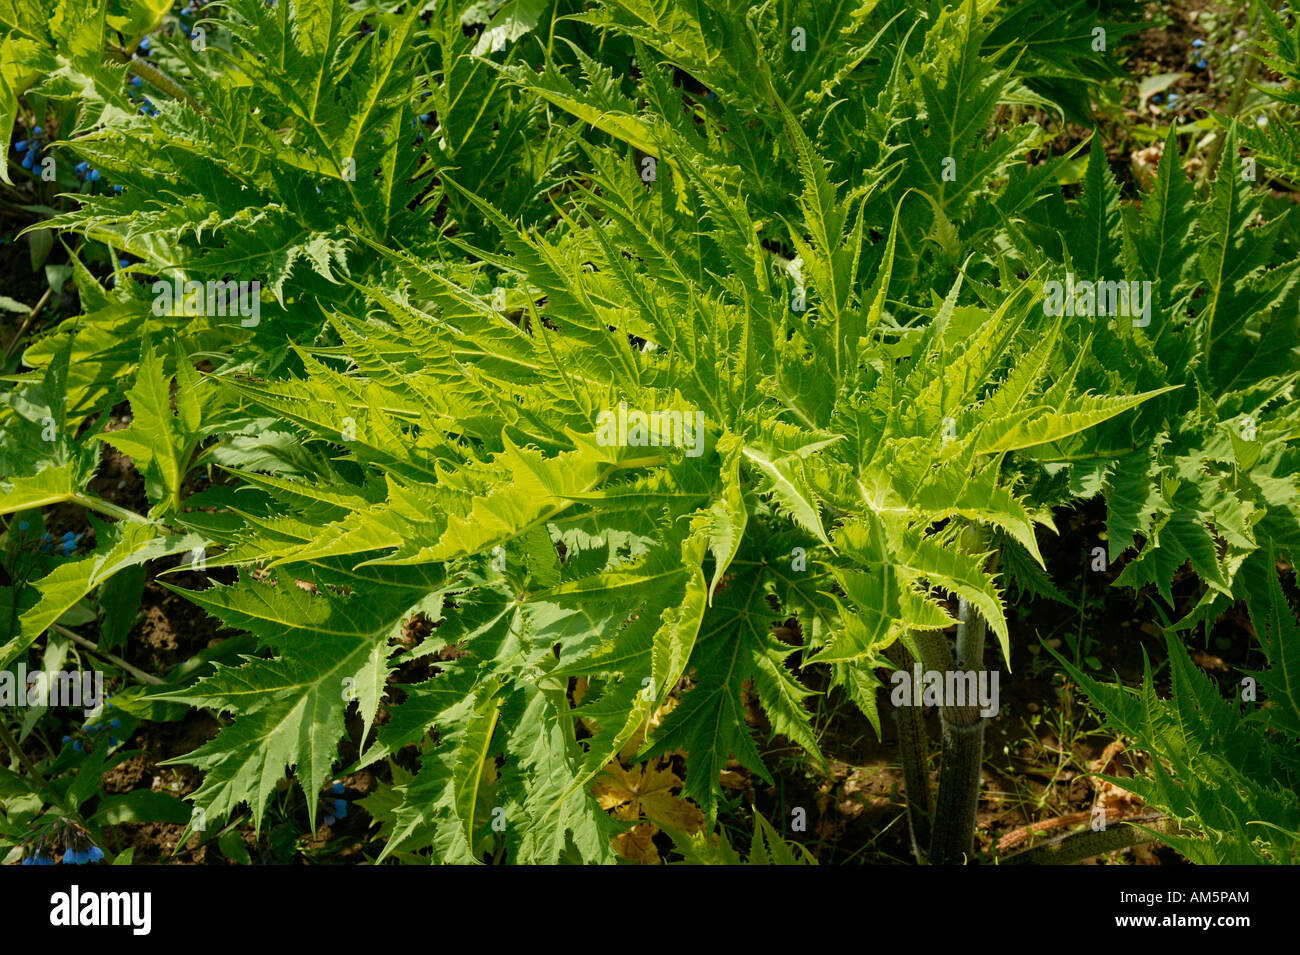 Giant hogweed (Heracleum mantegazzianum) Stock Photo